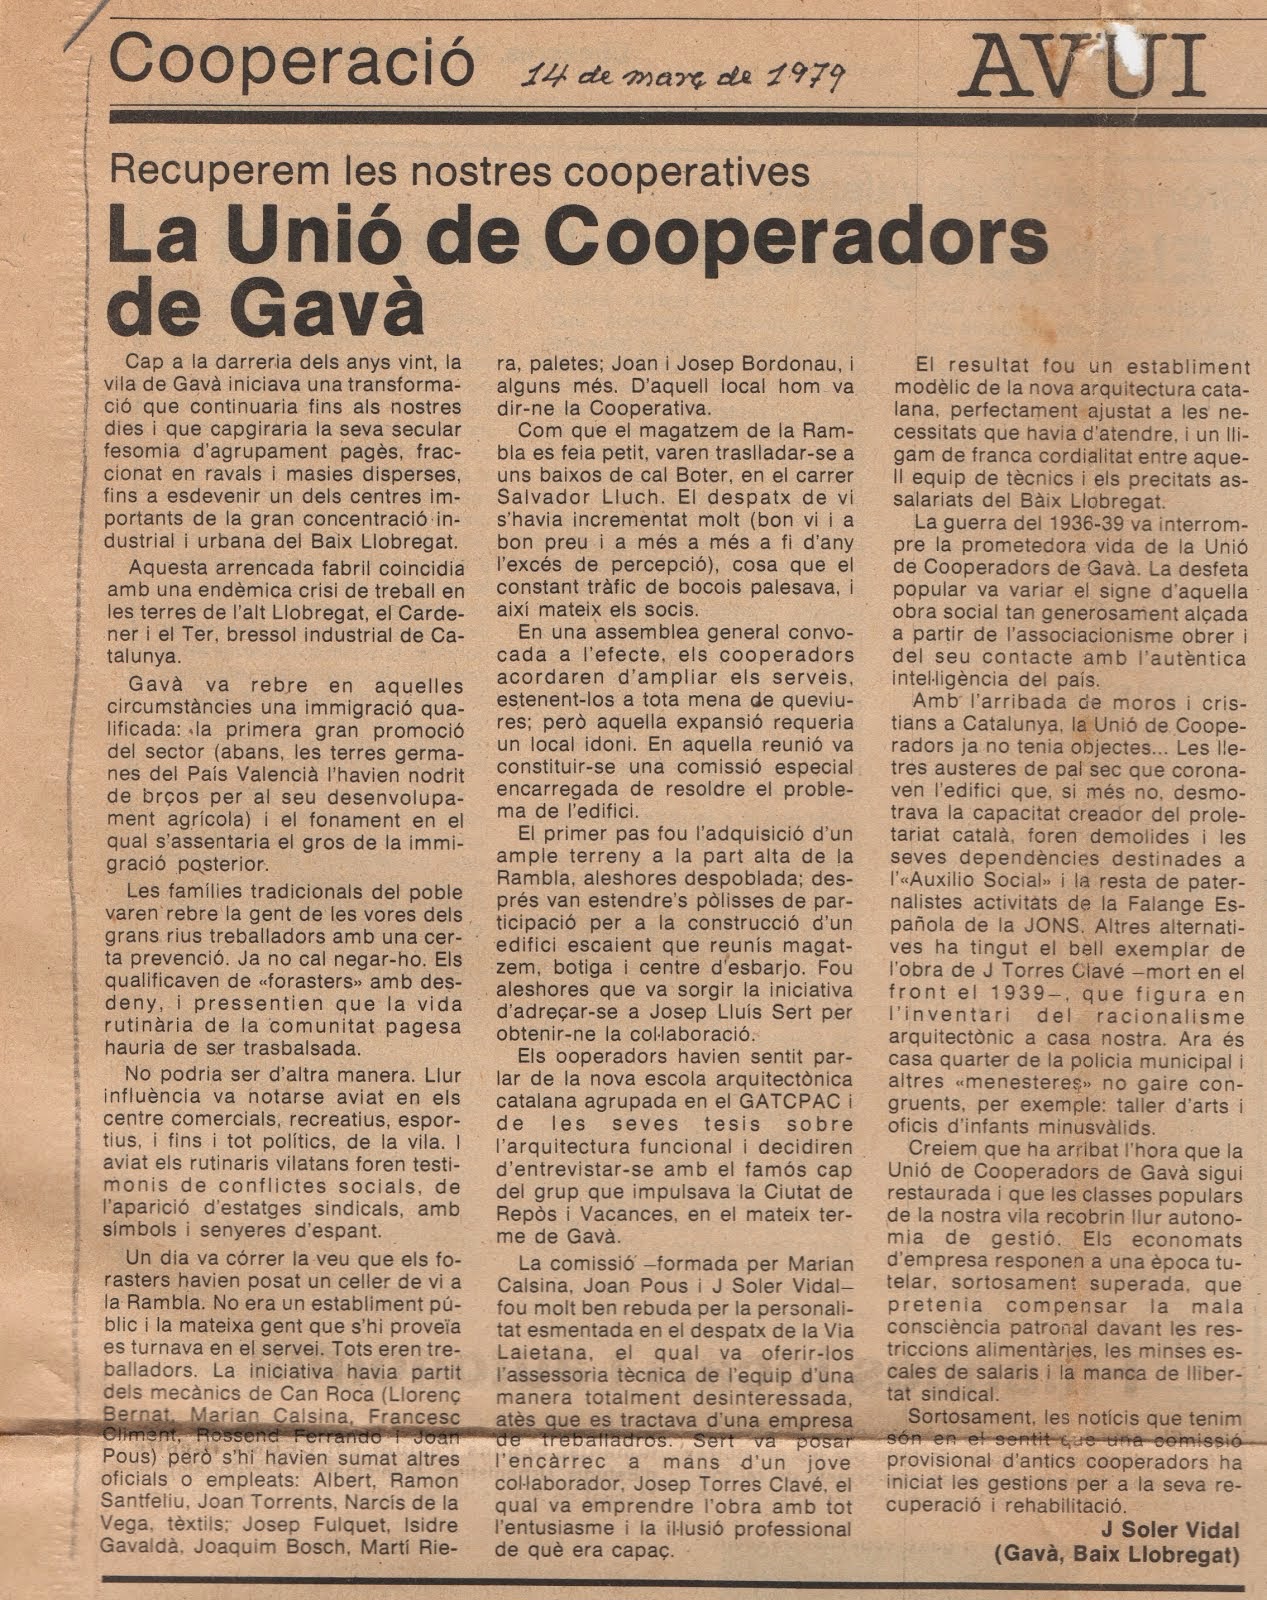 Article inici de la campanya per la recuperació de la Unió de Cooperadors